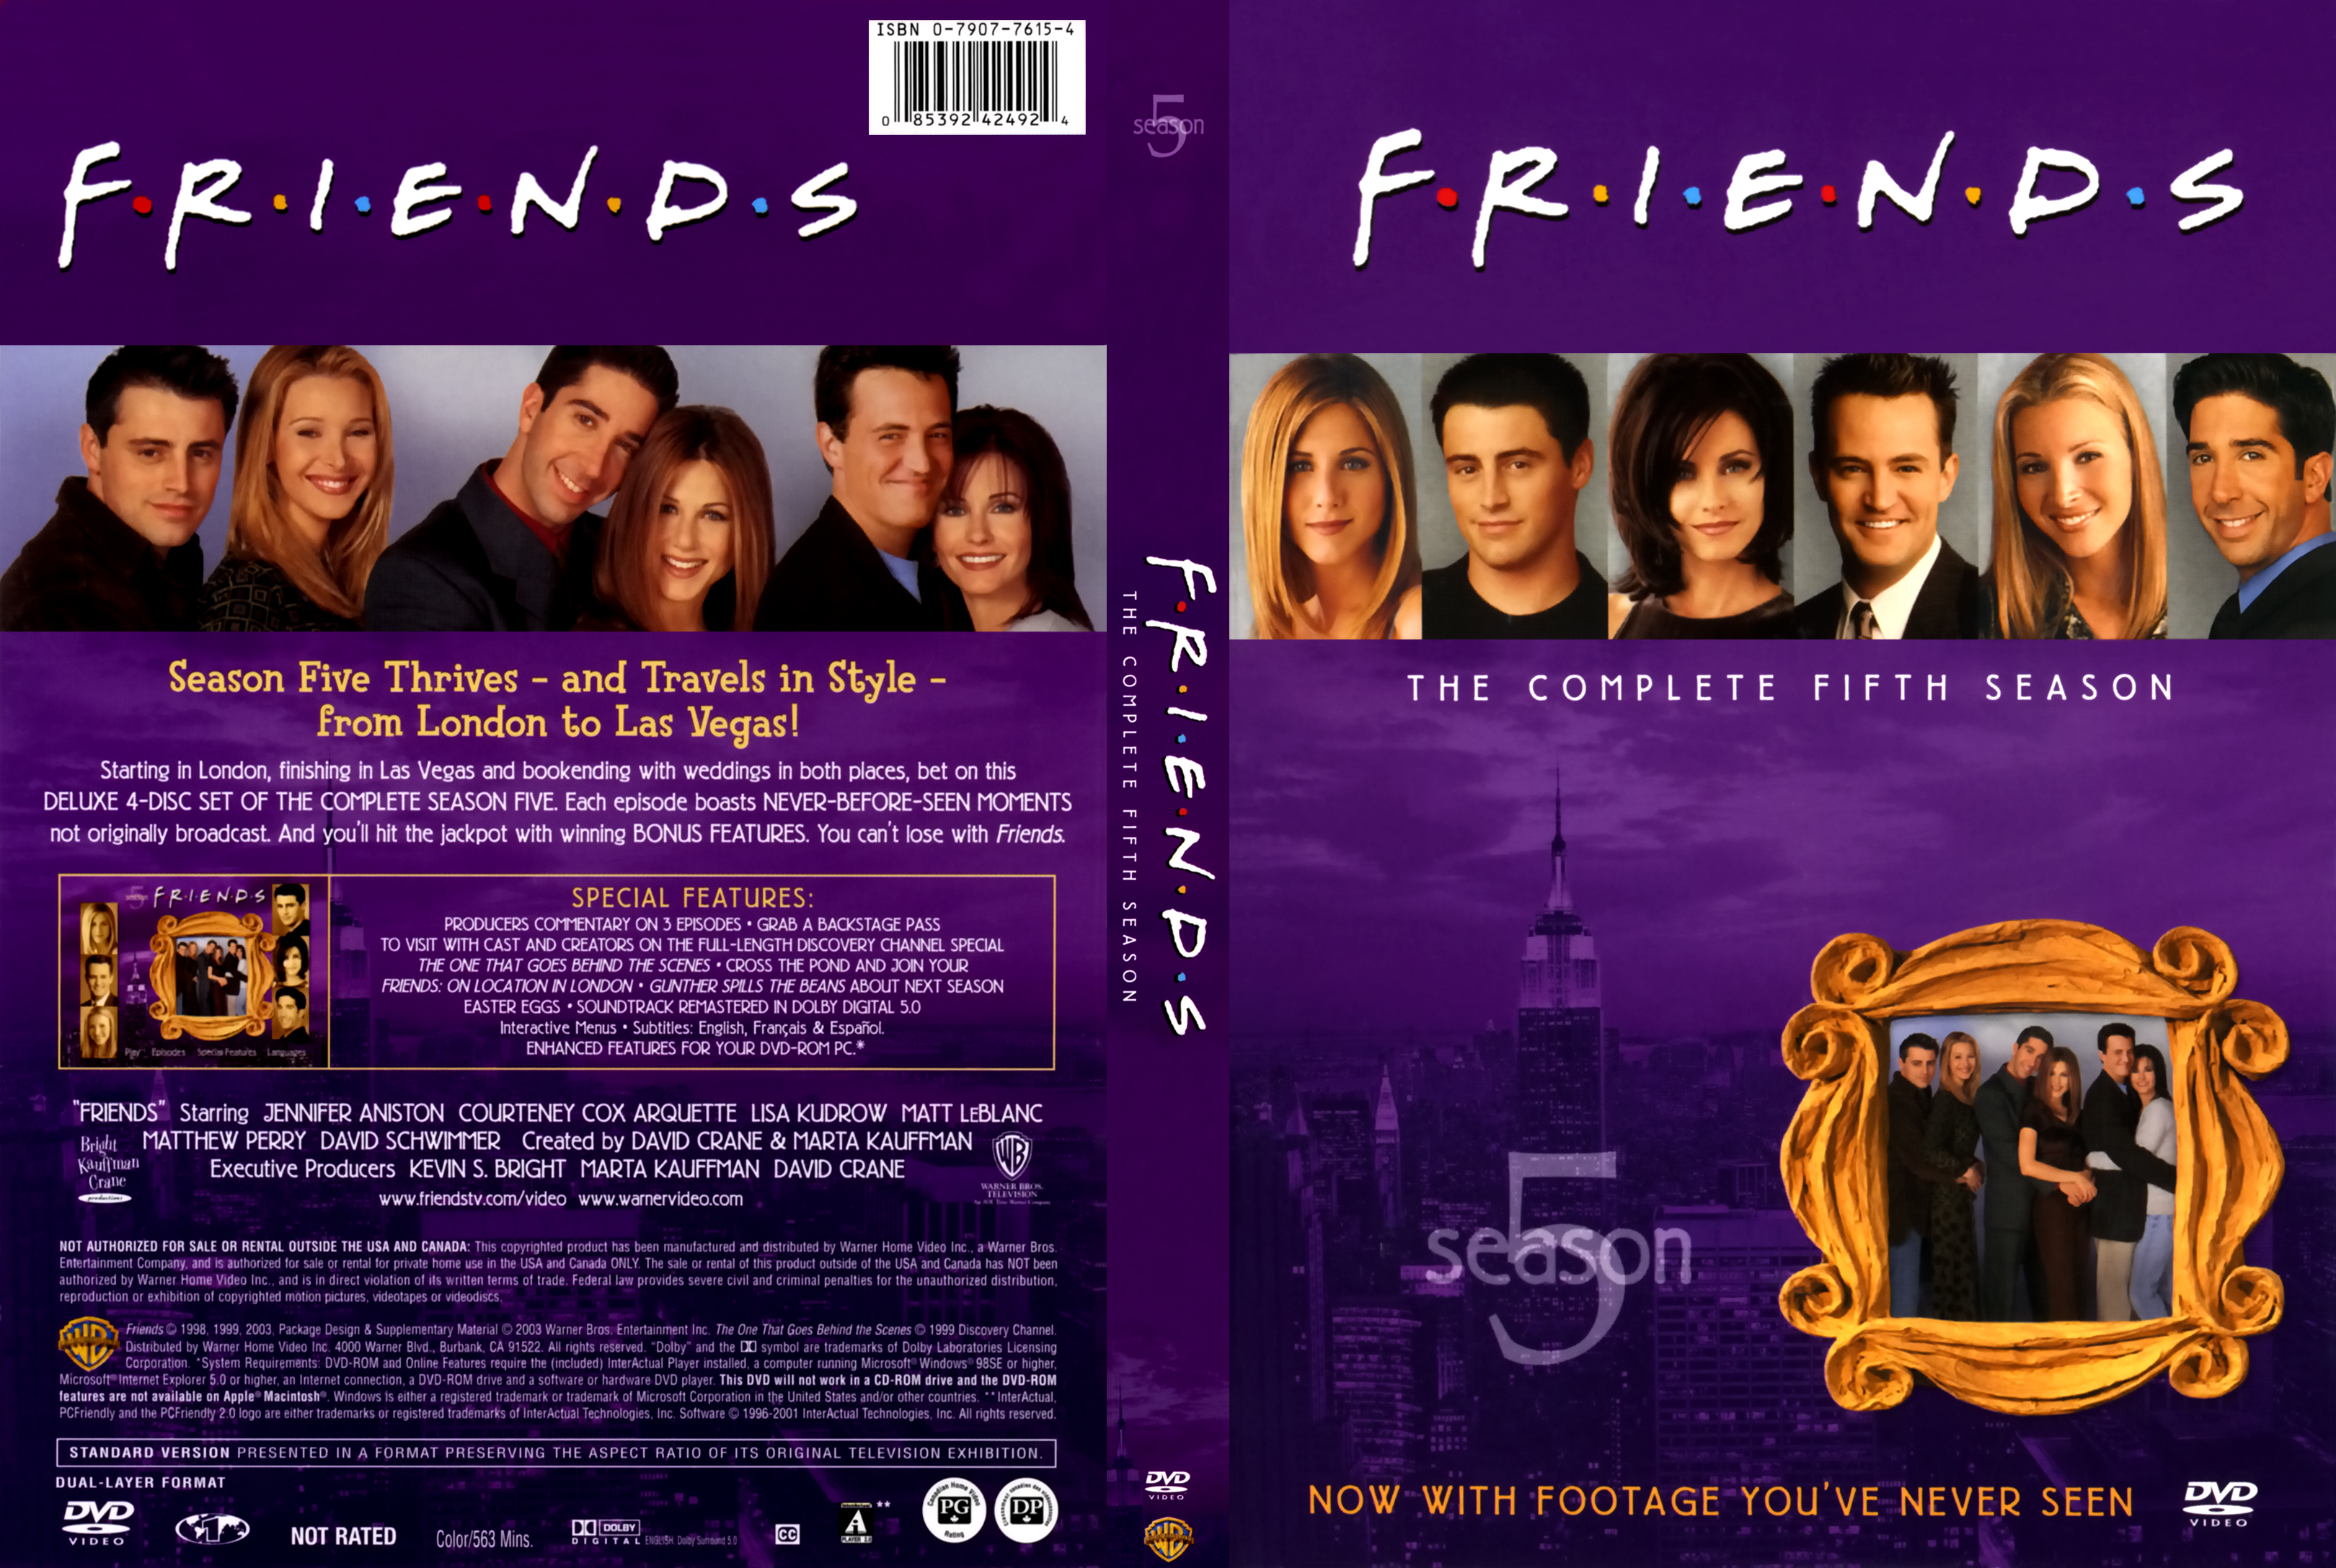 Friends Season 5